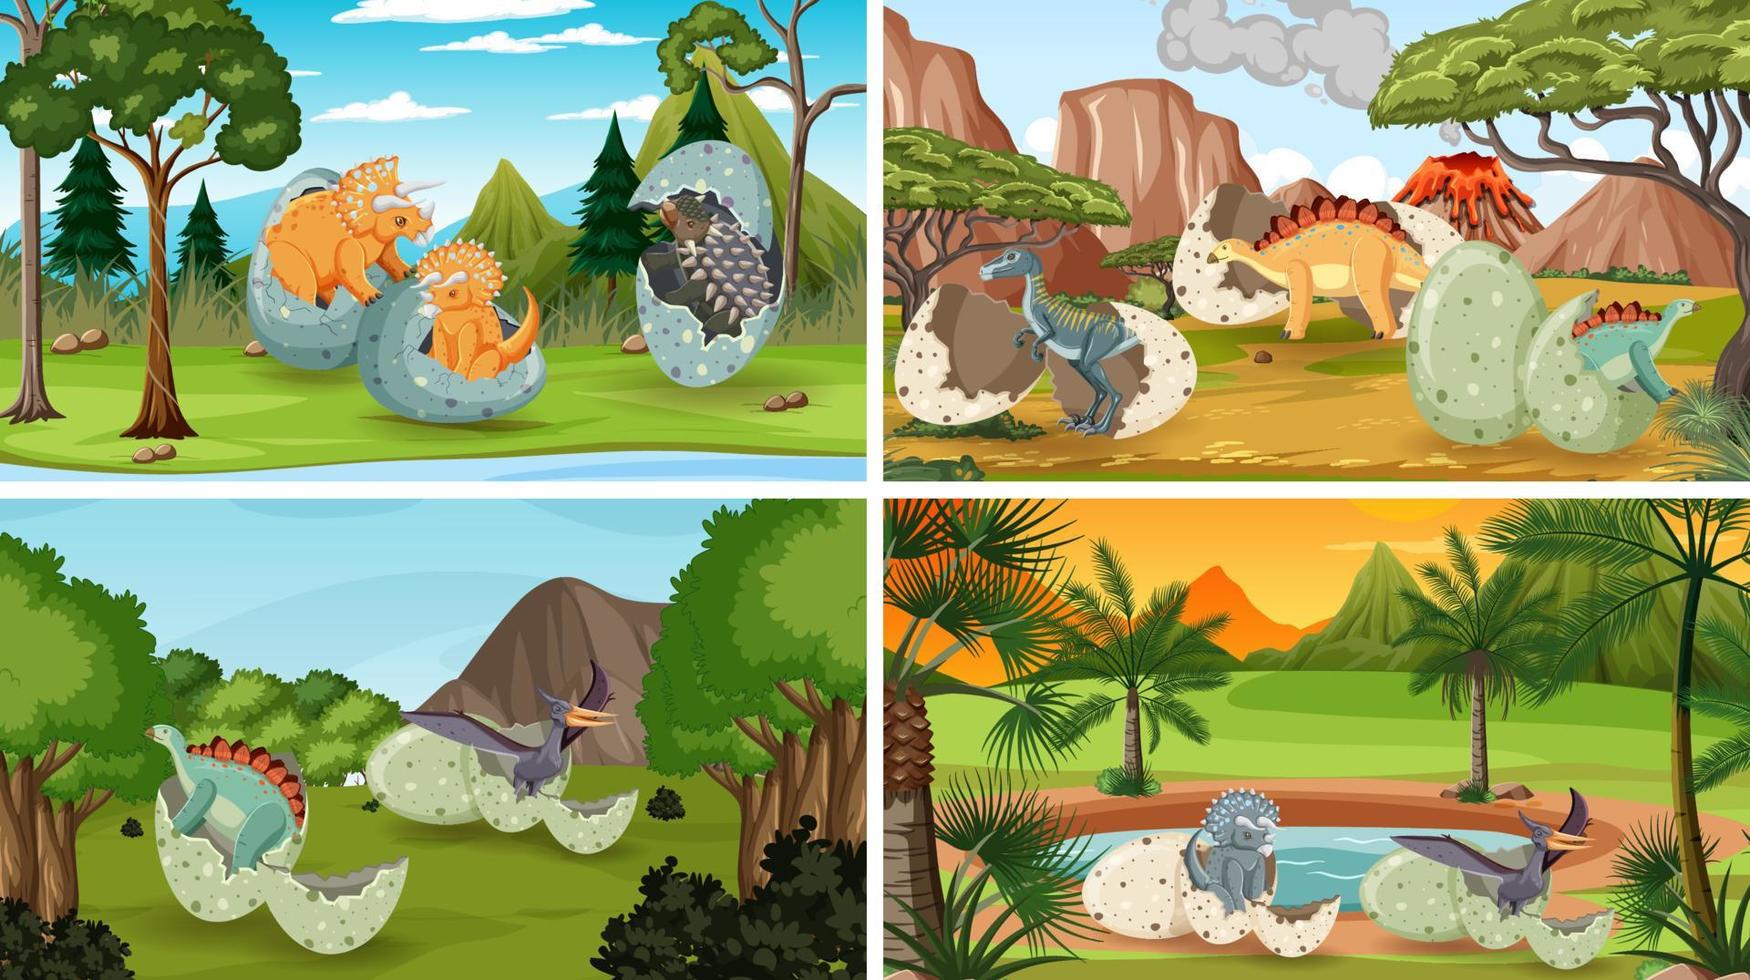 différentes scènes de forêt préhistorique avec dessin animé de dinosaure vecteur